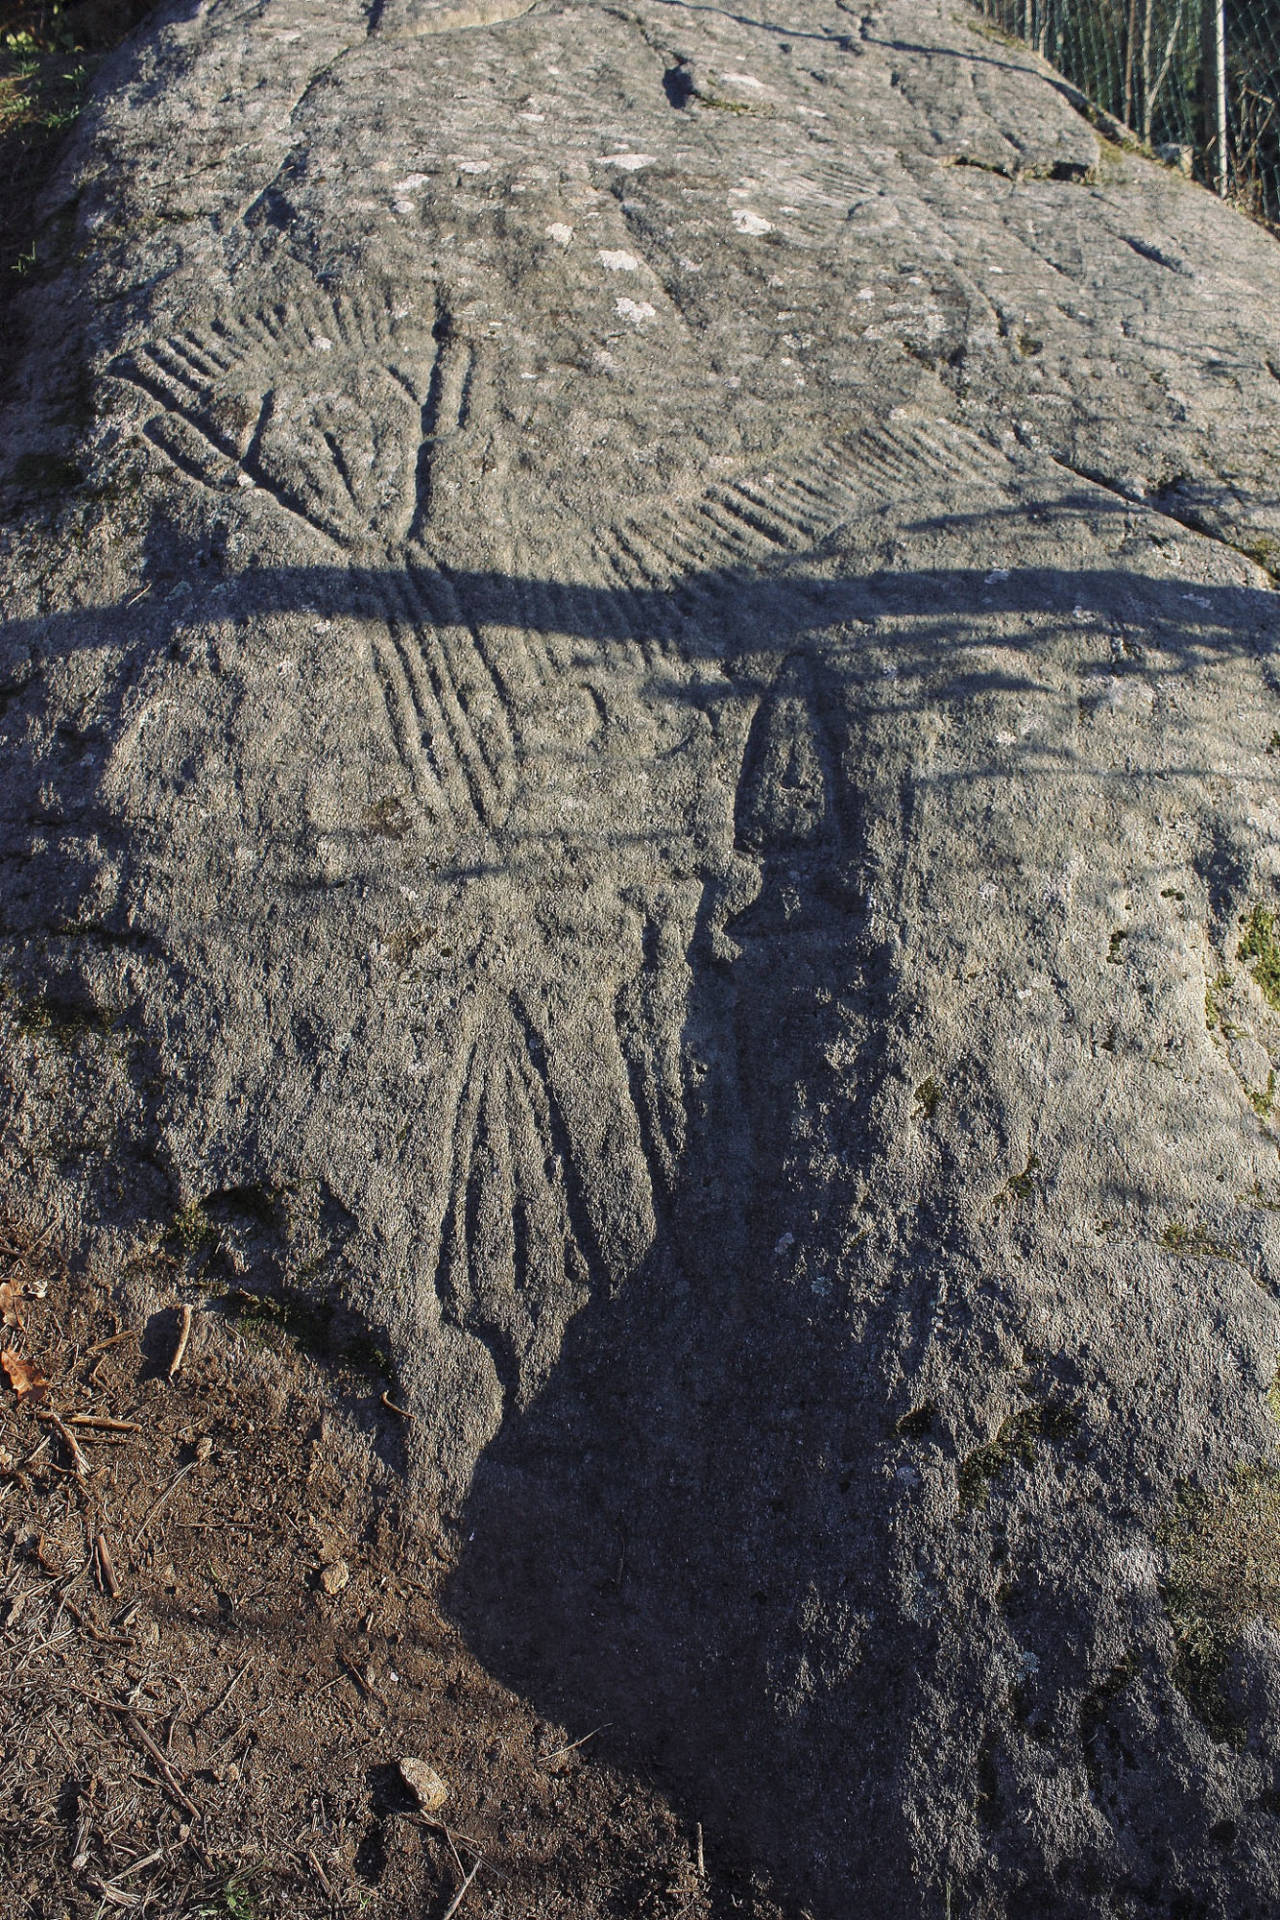 Vista general del petroglifo de Conxo de día. ©Colectivo a Rula.